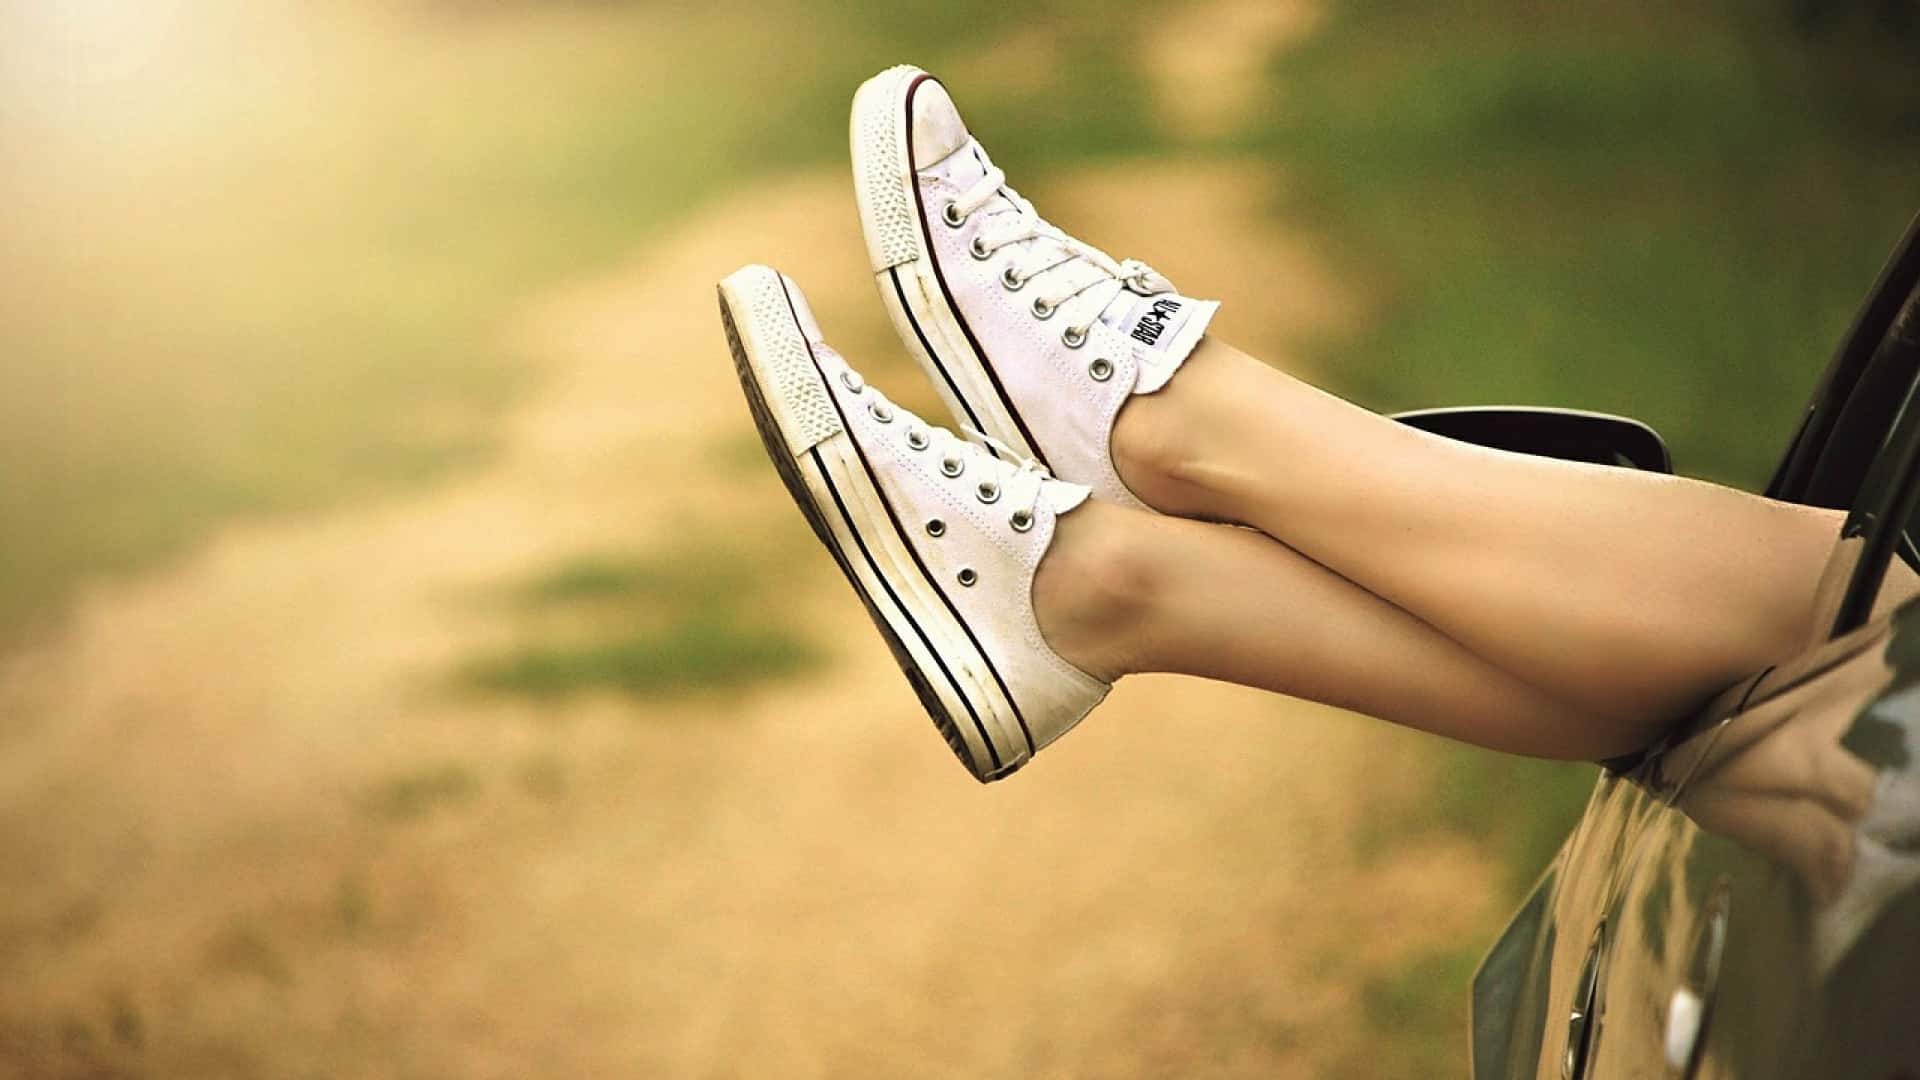 Achetez des chaussures en matière naturelle pour avoir un style unique